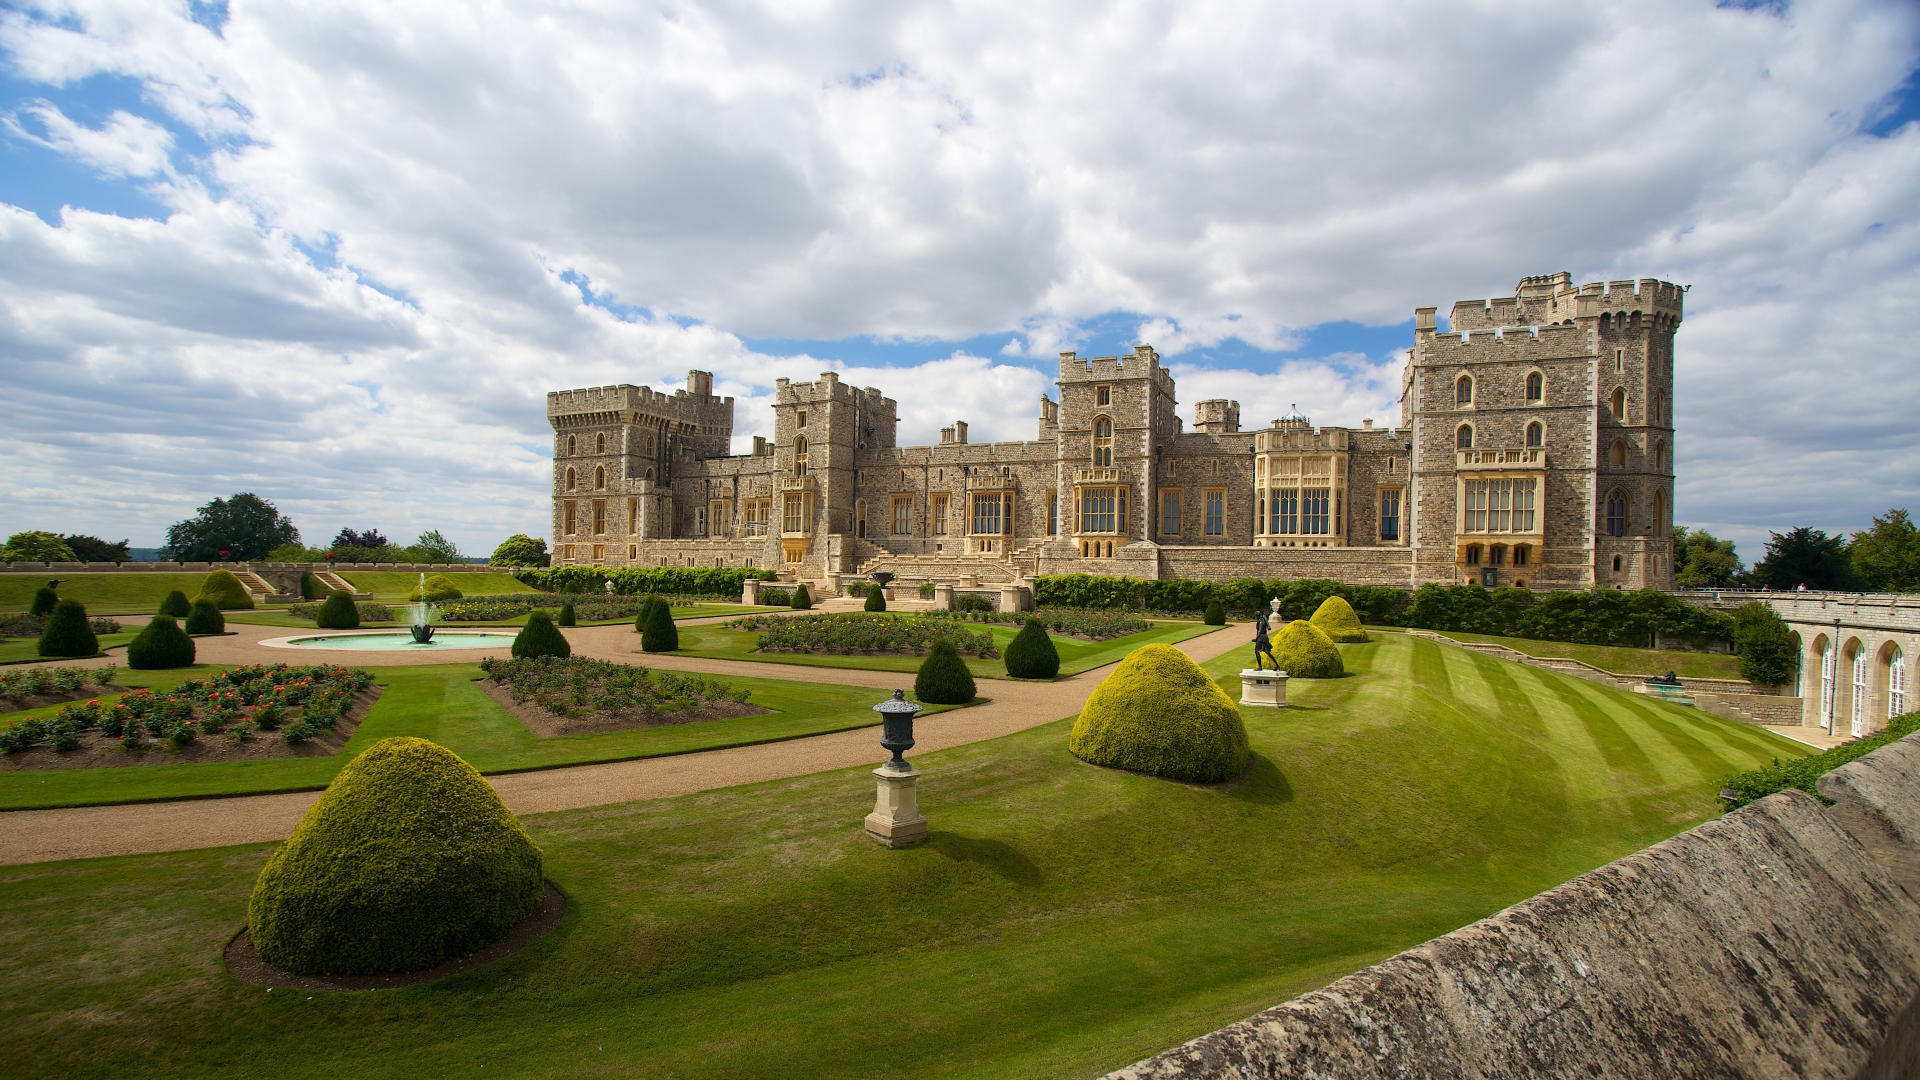 Vue du château de Windsor et de ses jardins verdoyants.